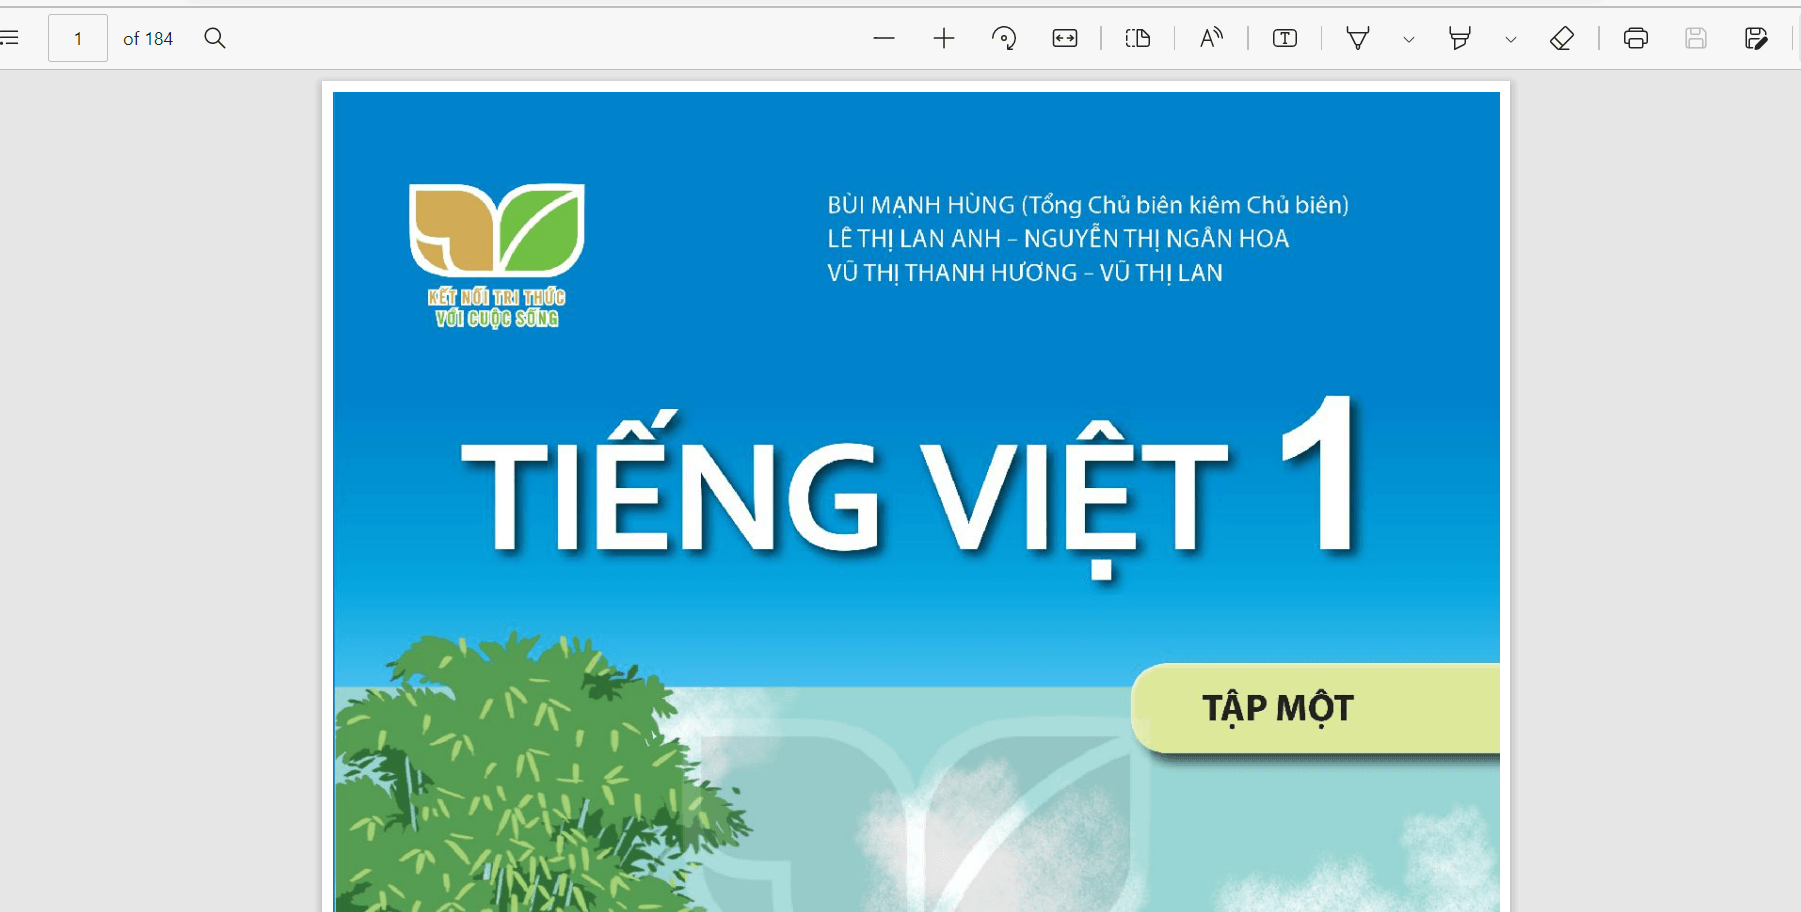 Sách Tiếng Việt lớp 1 Kết nối tri thức